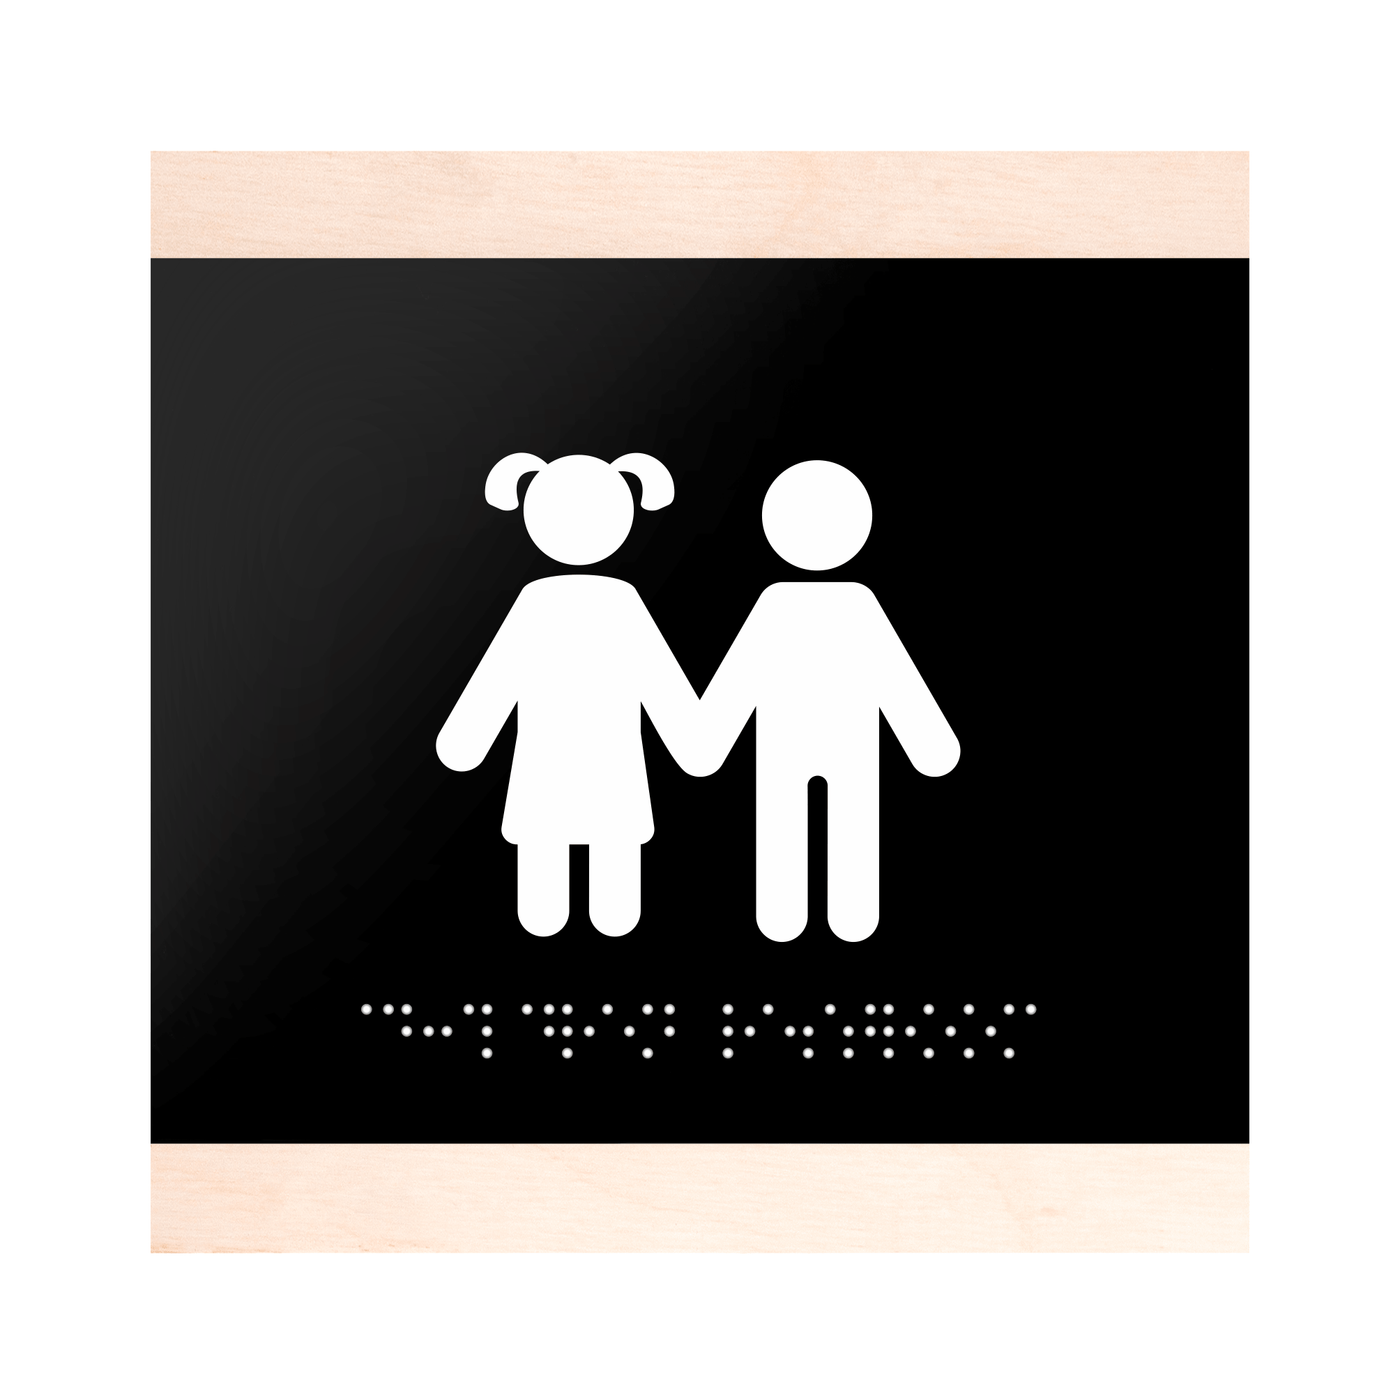 Wood Restroom Sign for Children - "Buro" Design